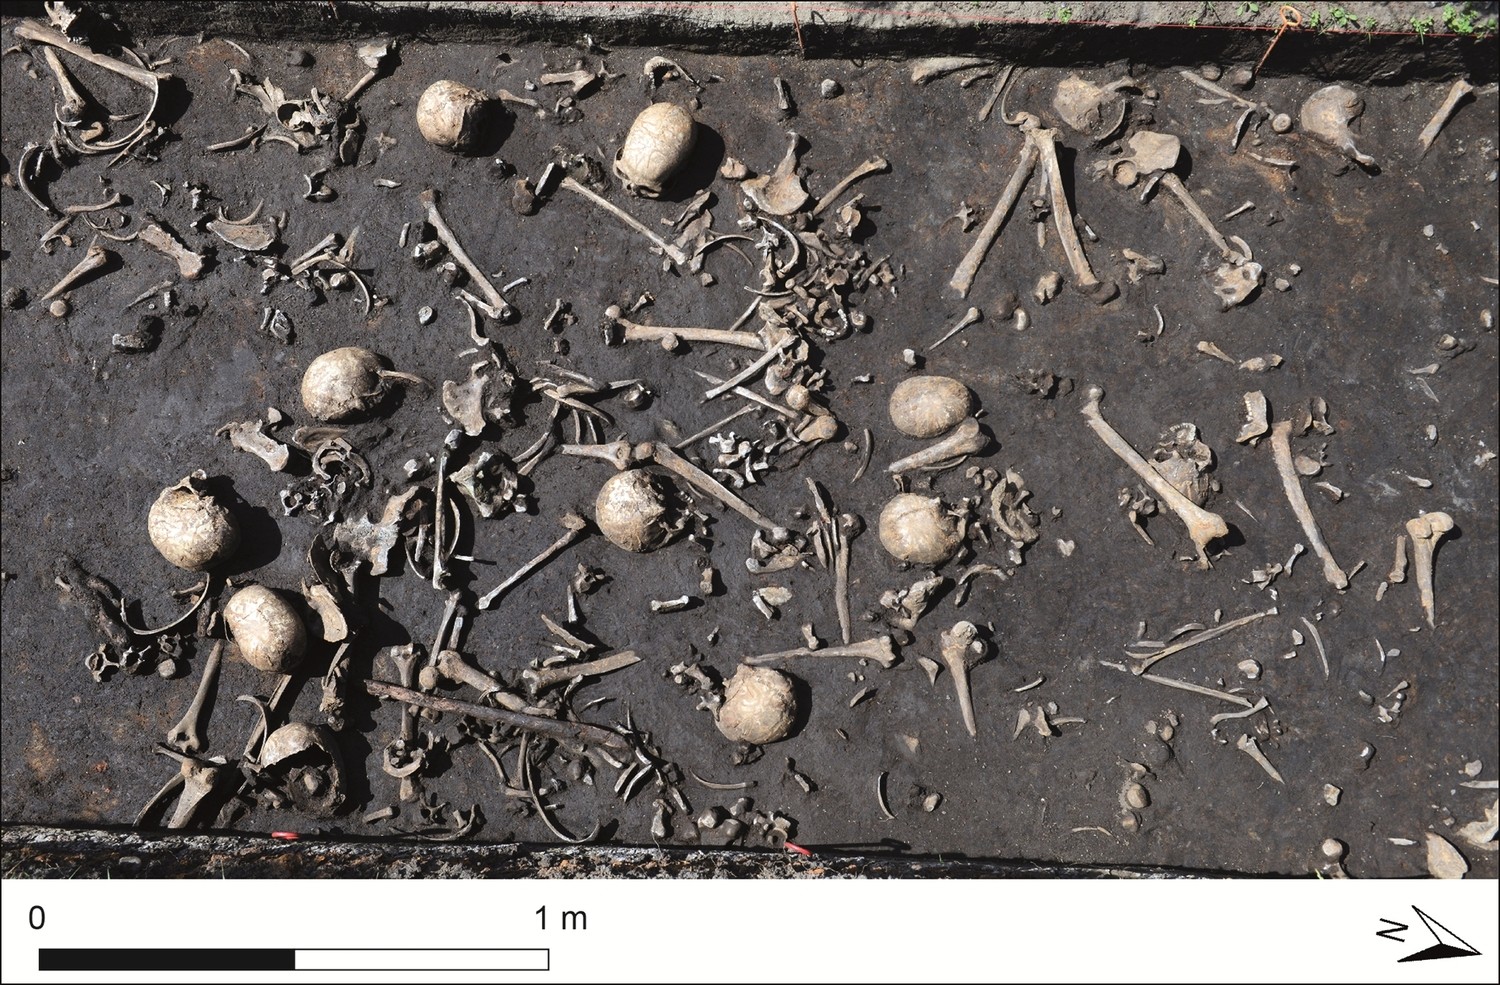 Restos mortais encontrados na mesma camada do solo que os objetos, perto do rio Tollense, em Weltzin, na Alemanha (Foto: Stefan Sauer/Universidade de Göttingen)